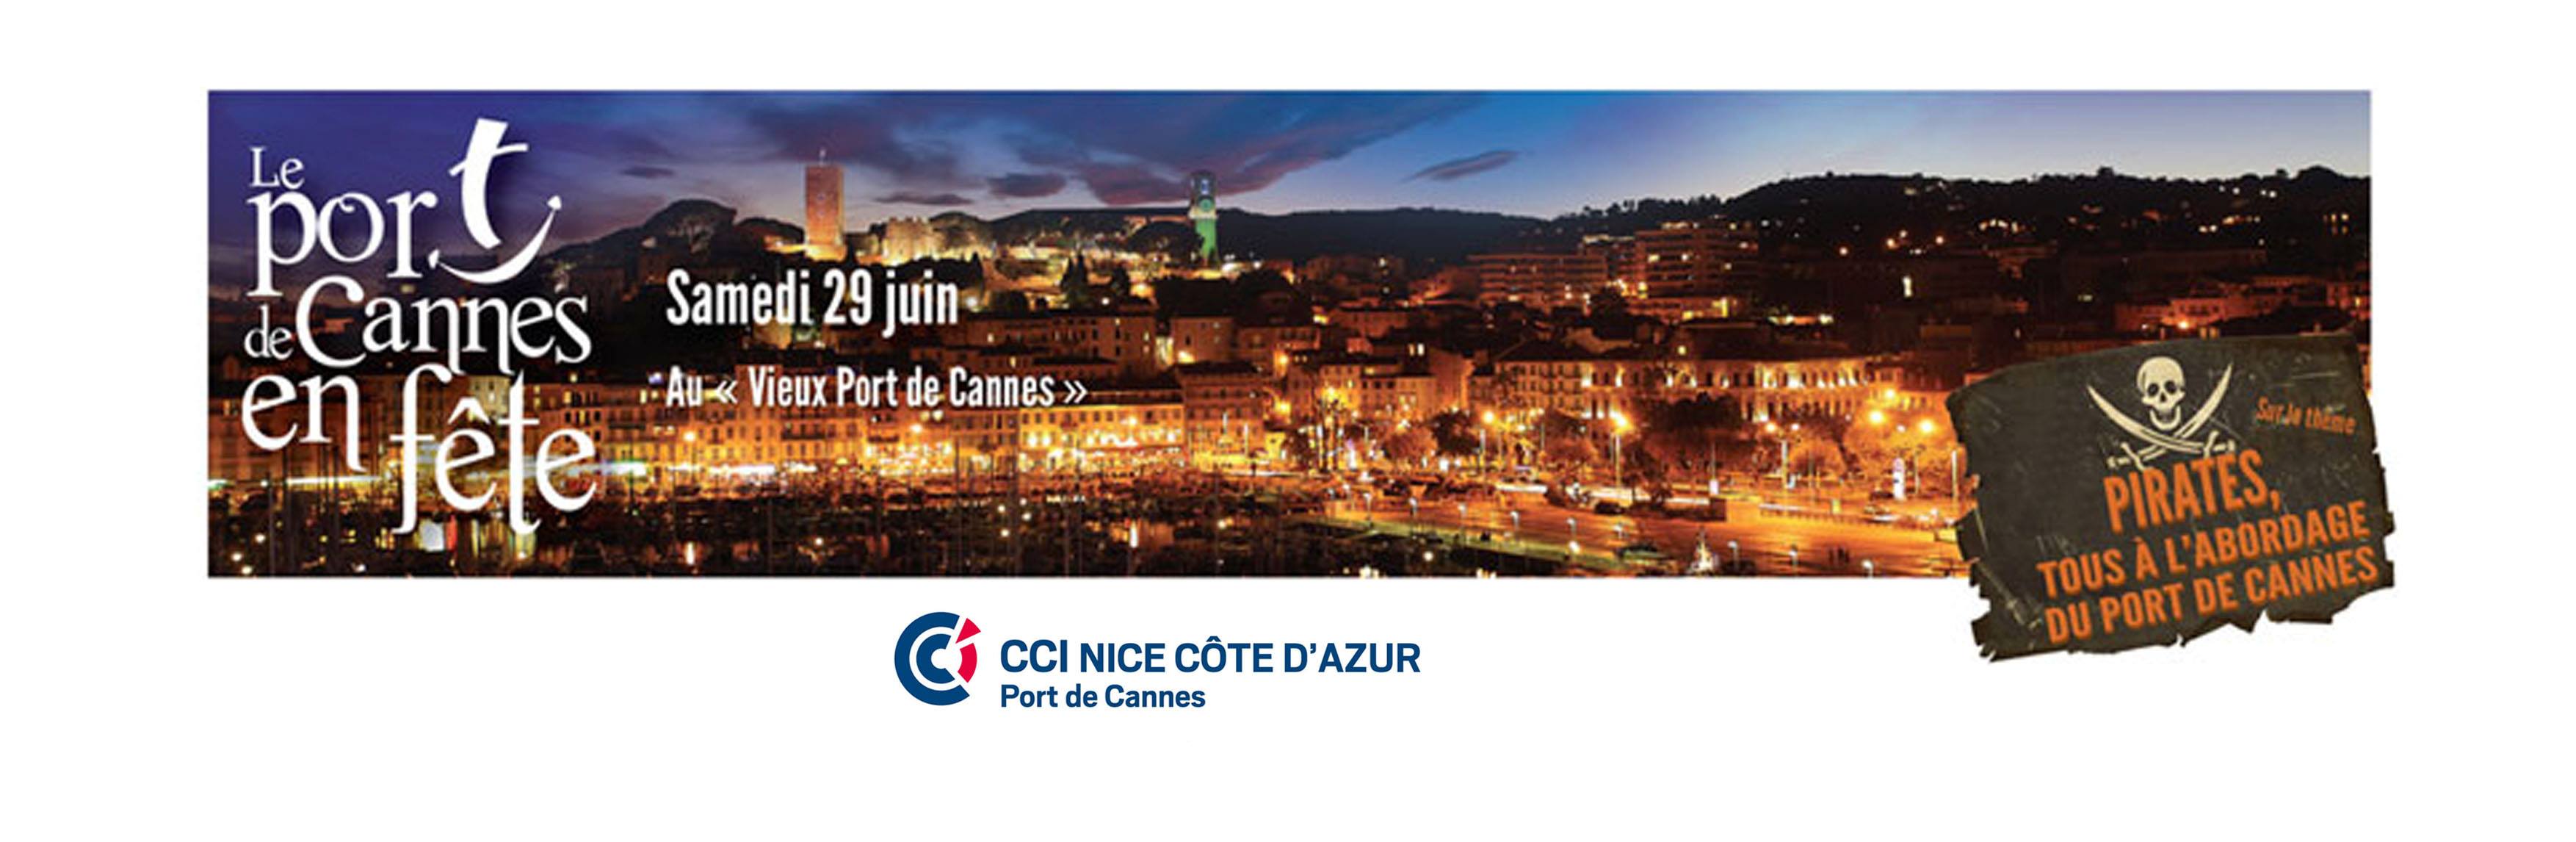 Fête du port de Cannes 29 Juin 2013